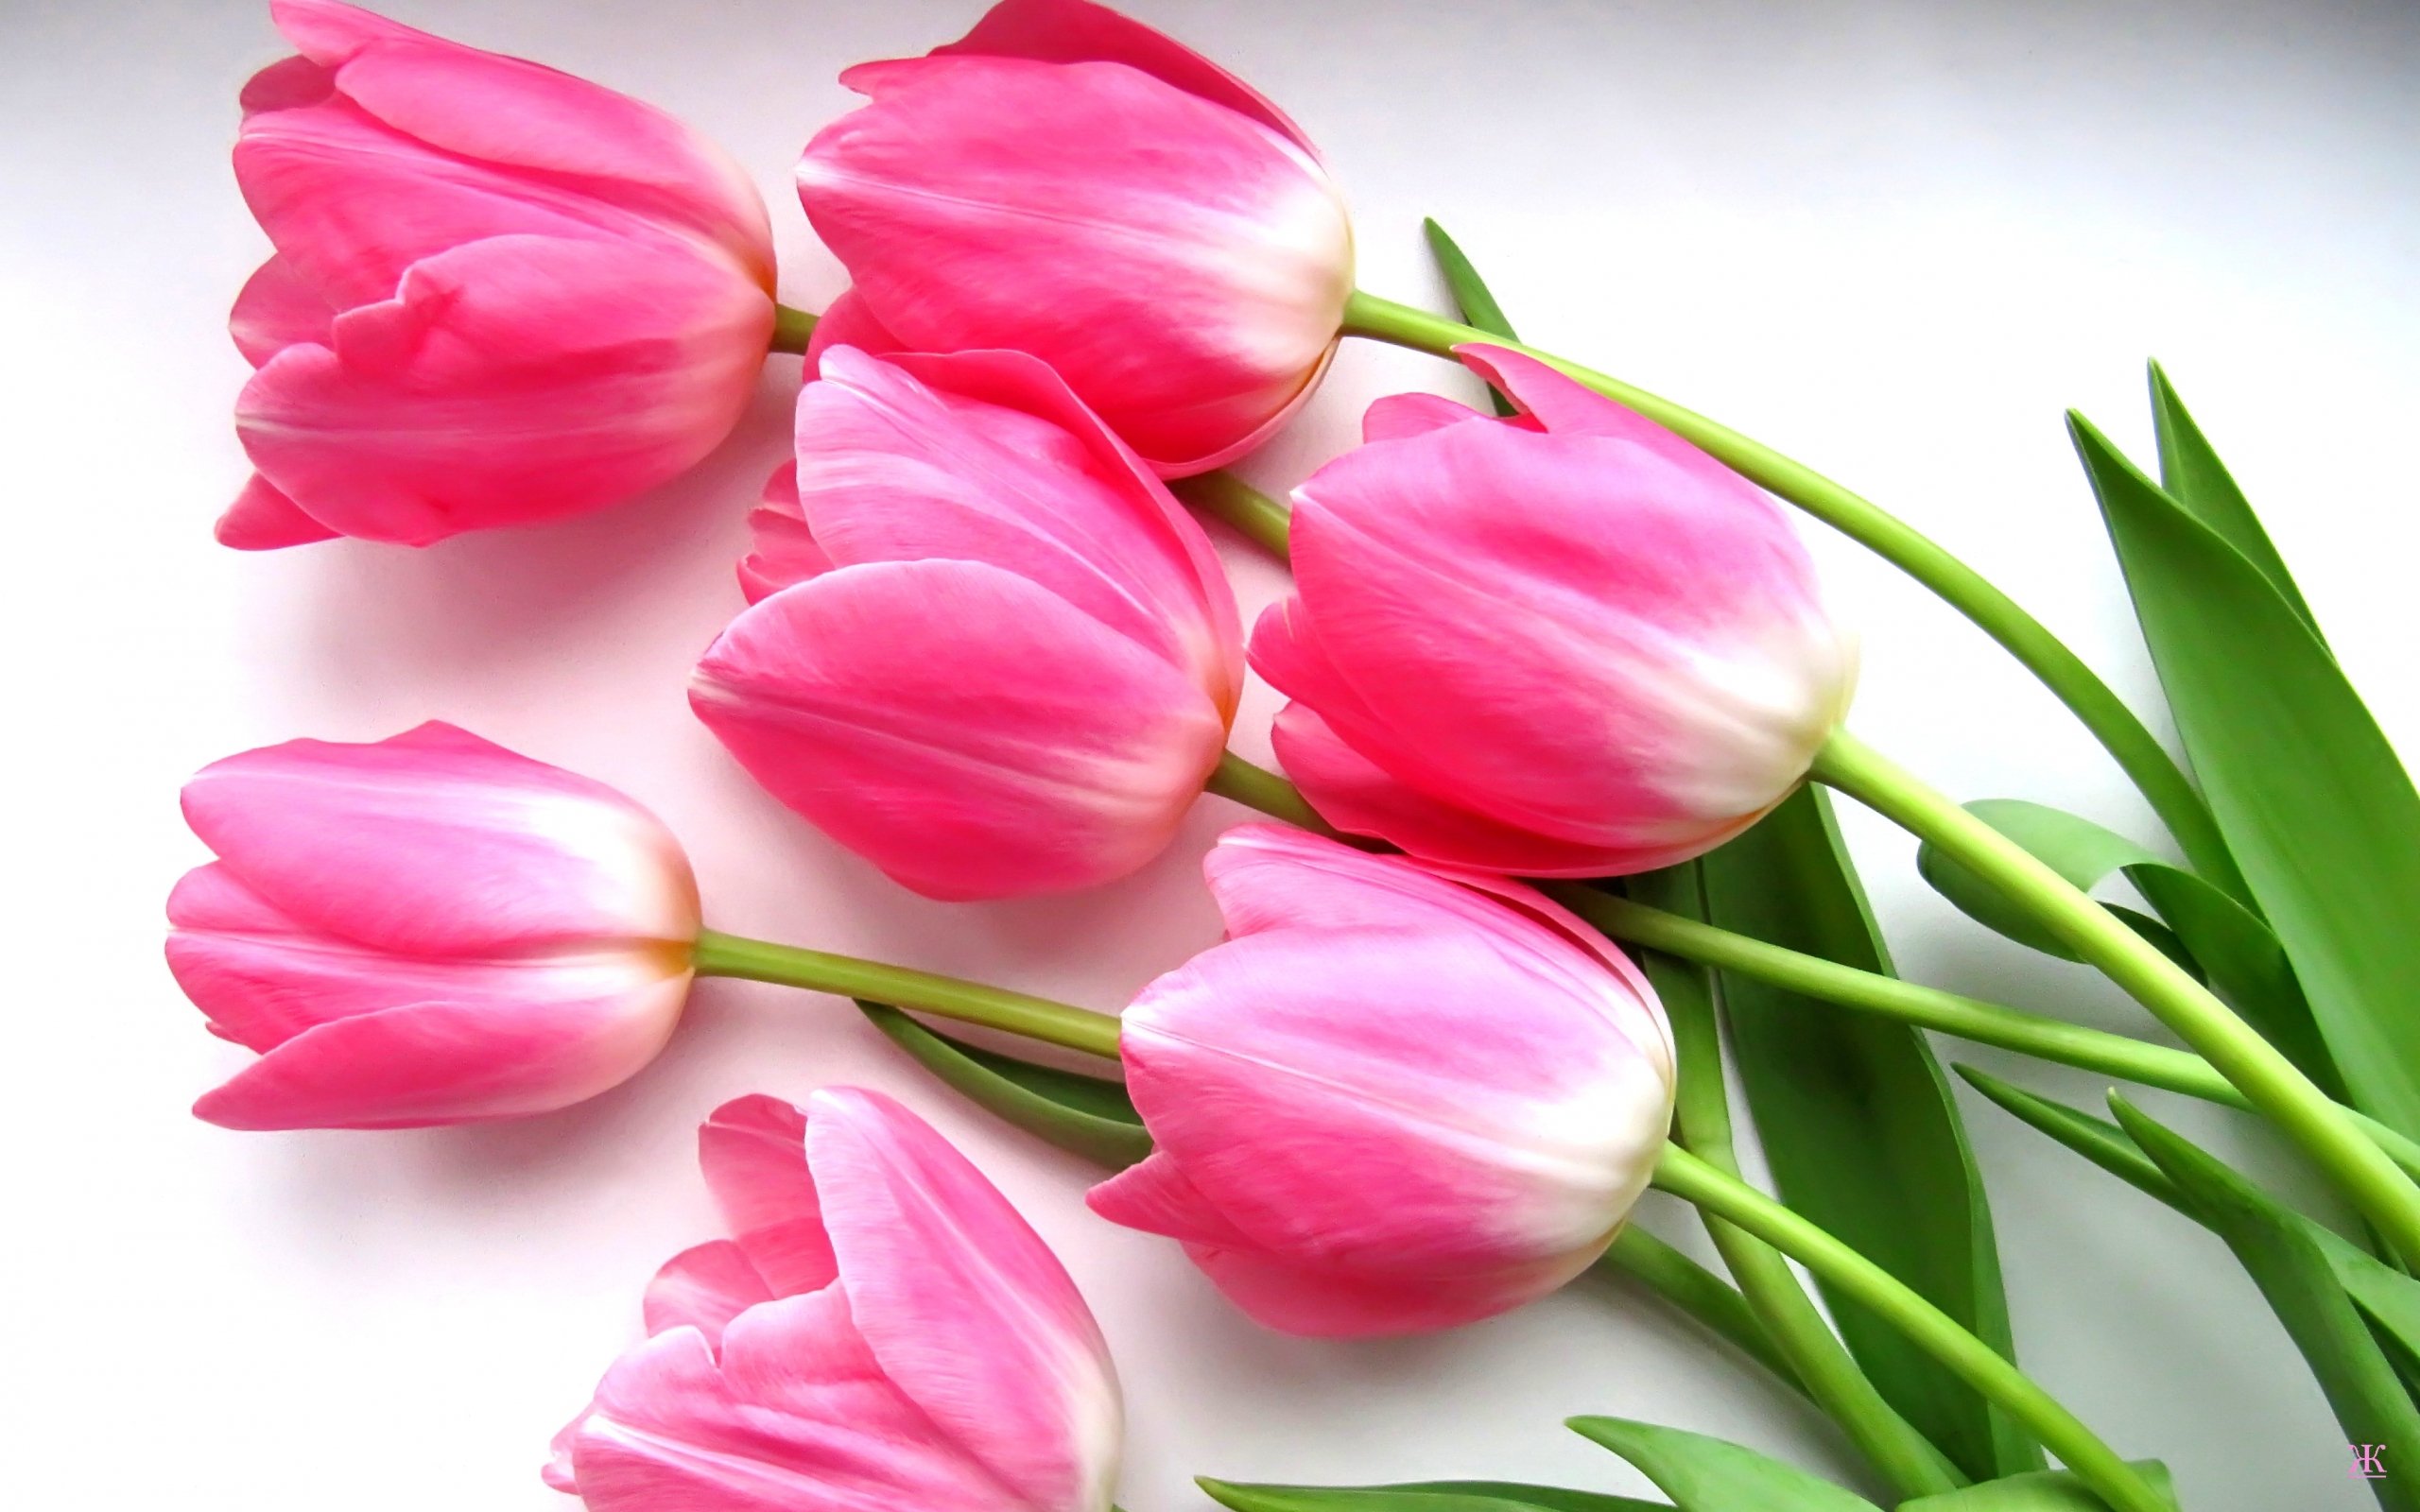 Обои на телефон красивые тюльпаны. Цветы тюльпаны. Розовые тюльпаны. Шикарные тюльпаны. Букет тюльпанов открытка.